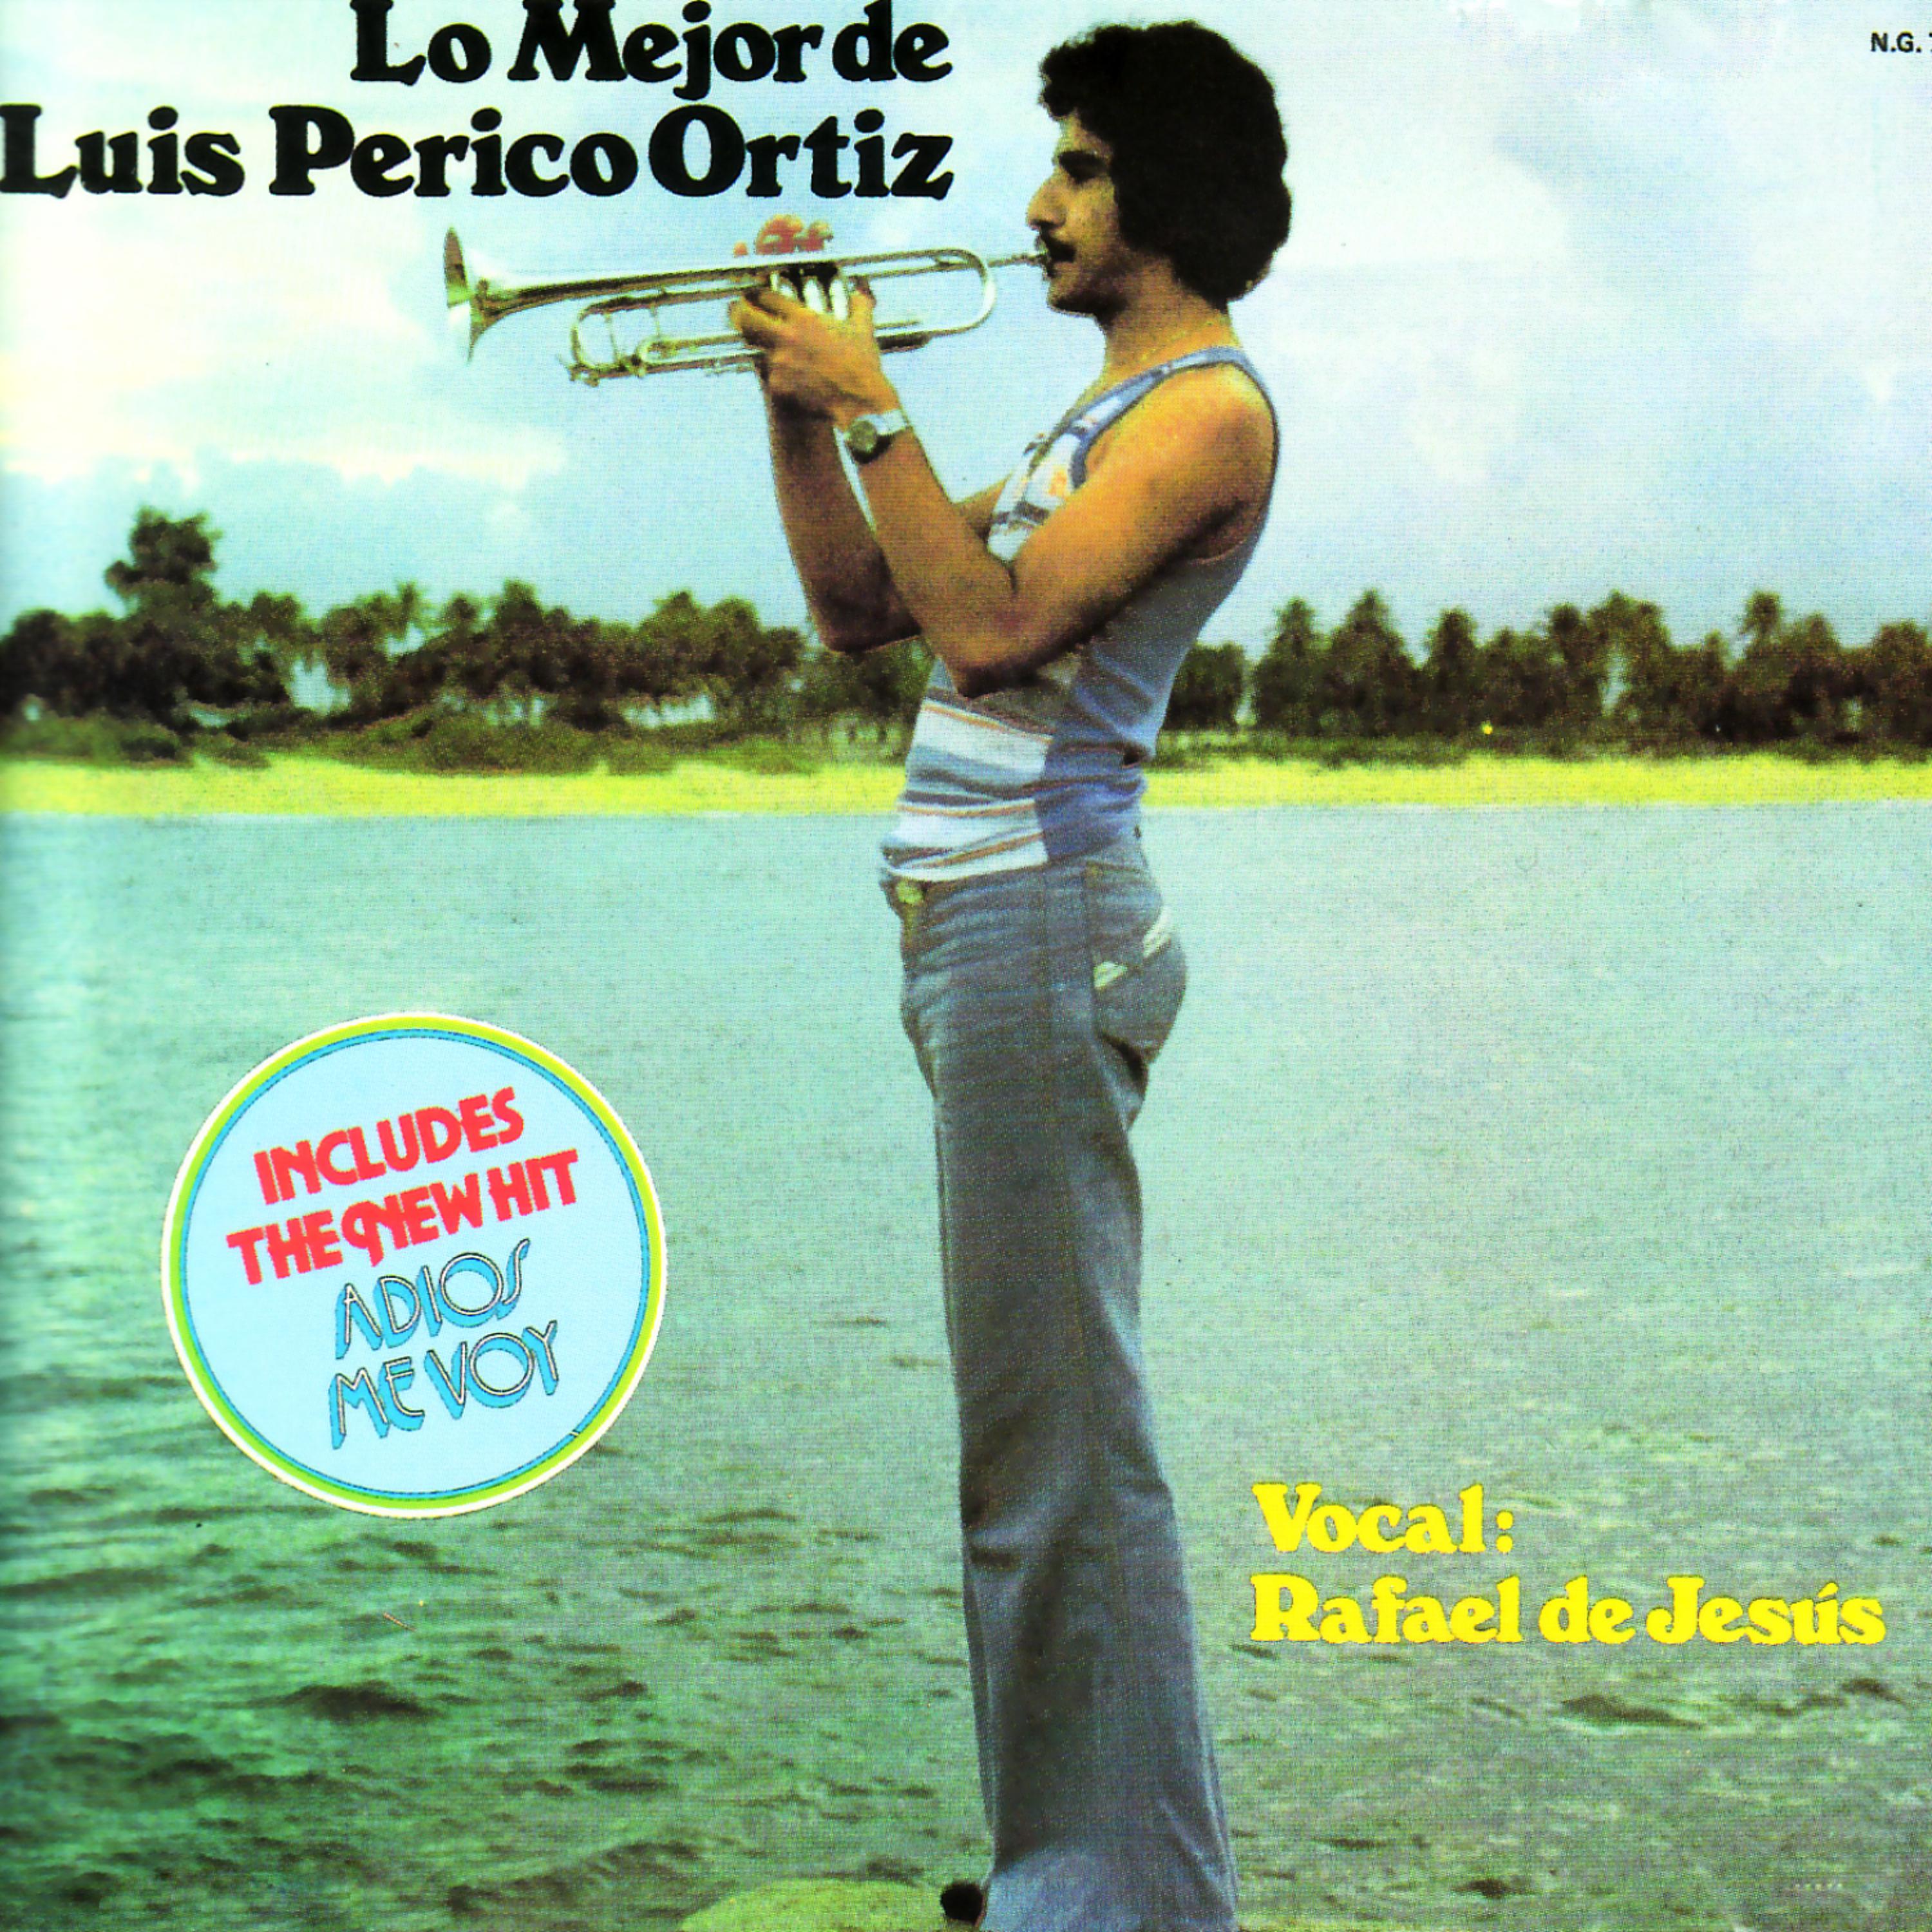 Постер альбома Lo Mejor de Luis "Perico" Ortiz - Canta: Rafael de Jesus